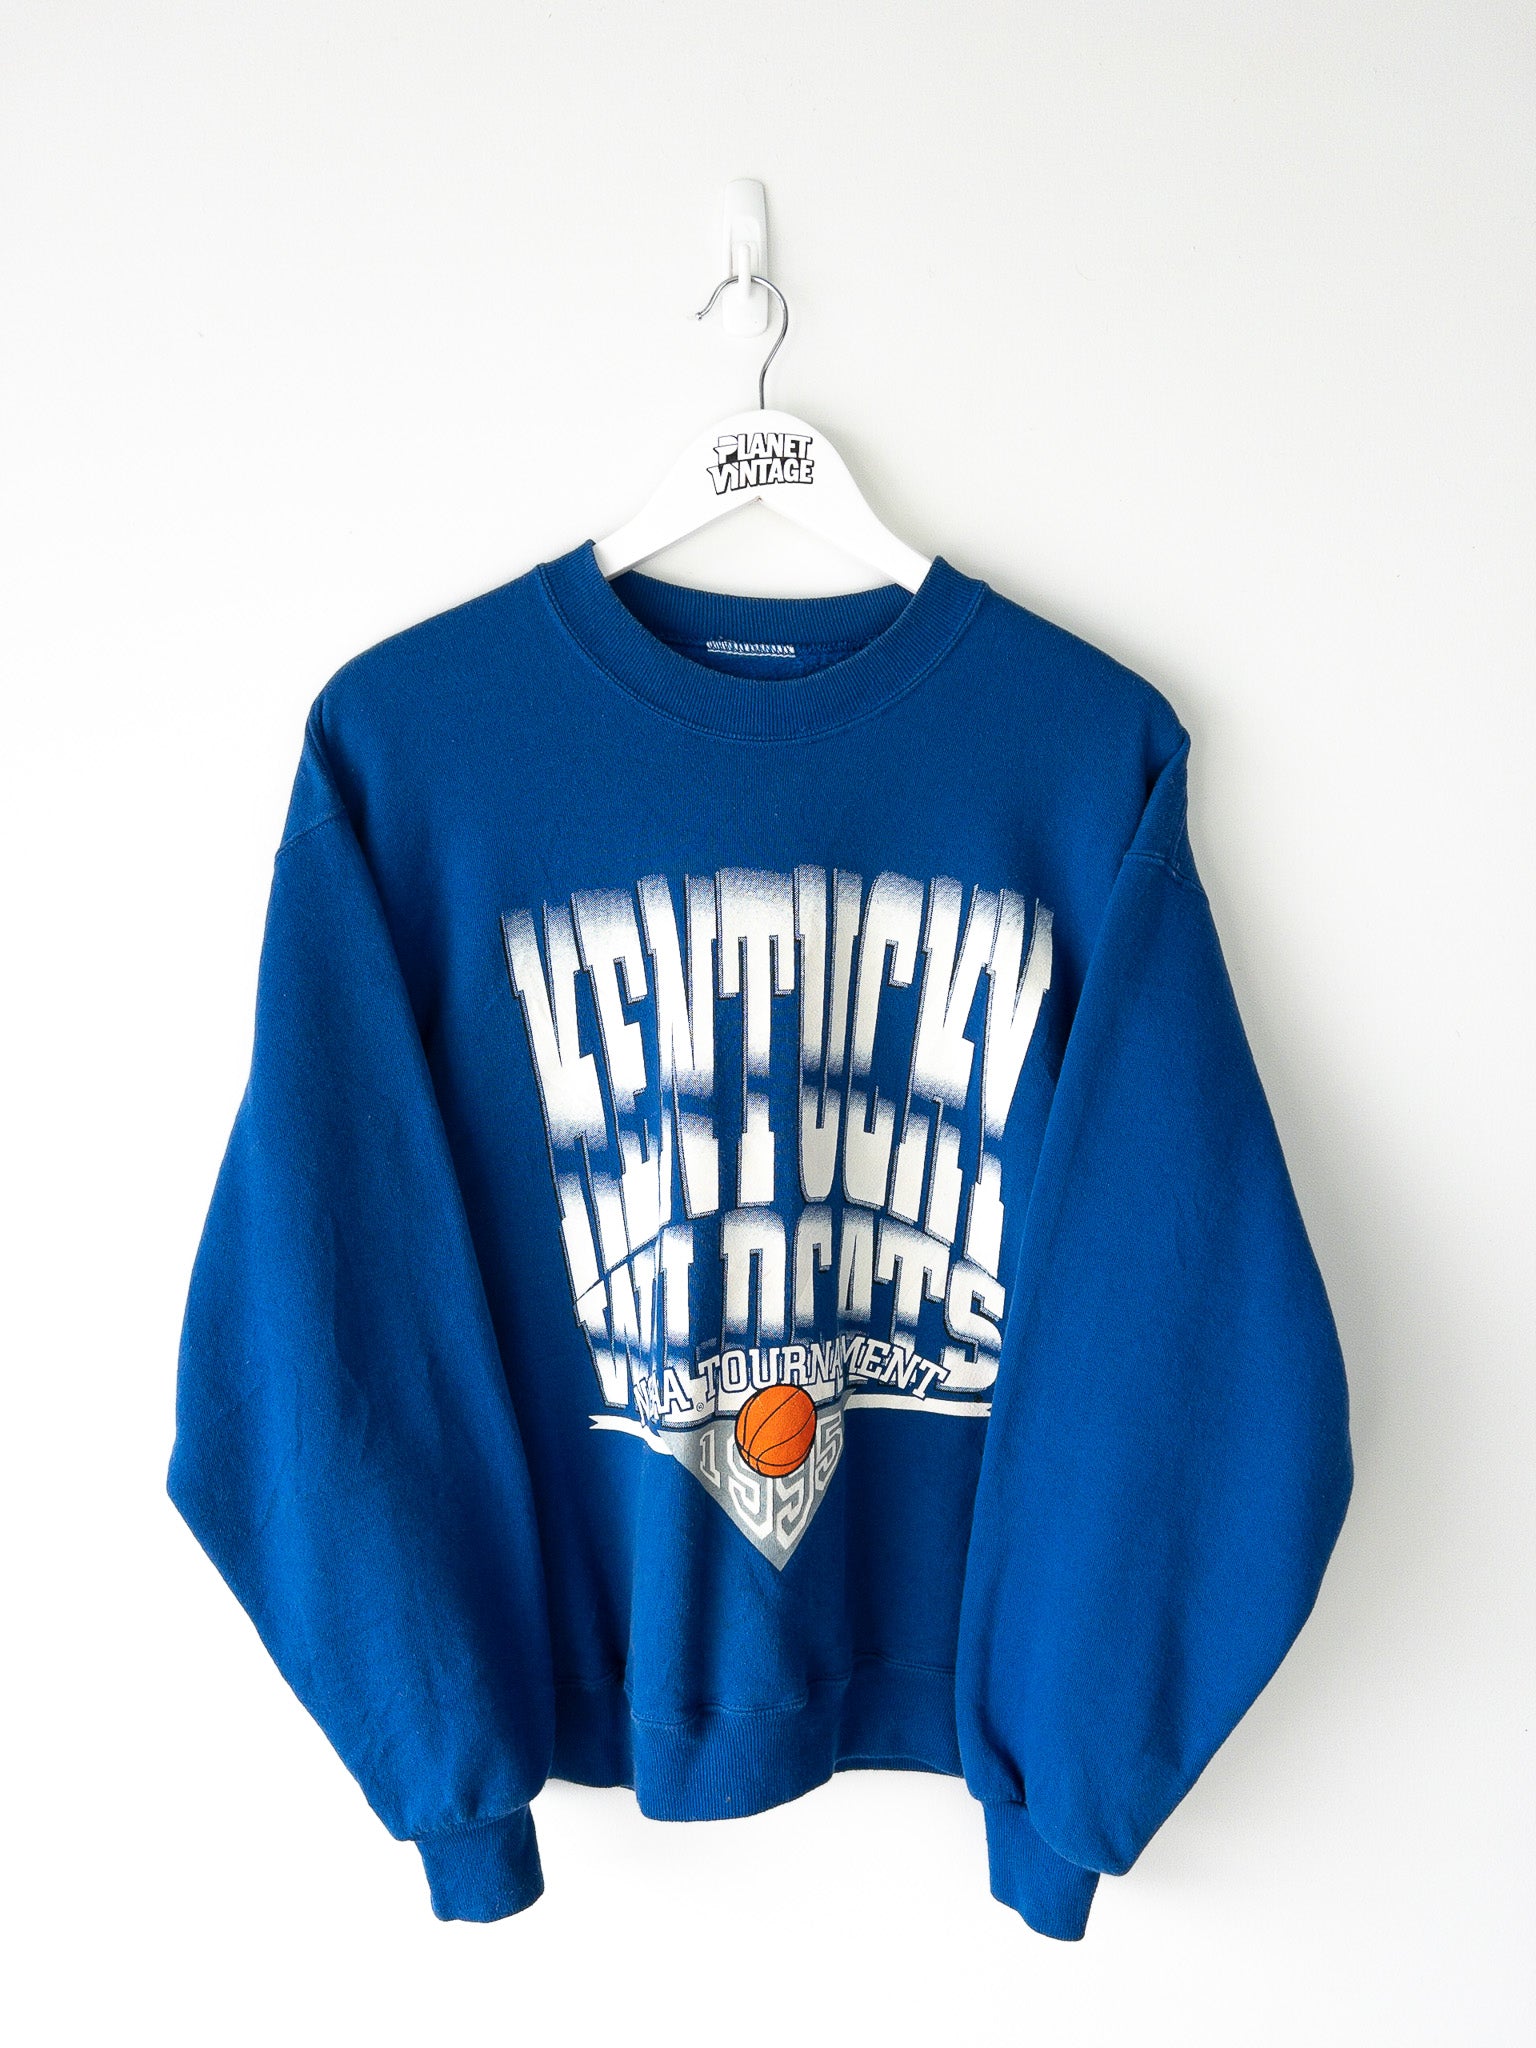 Vintage Kentucky Wildcats 1995 Sweatshirt (L)